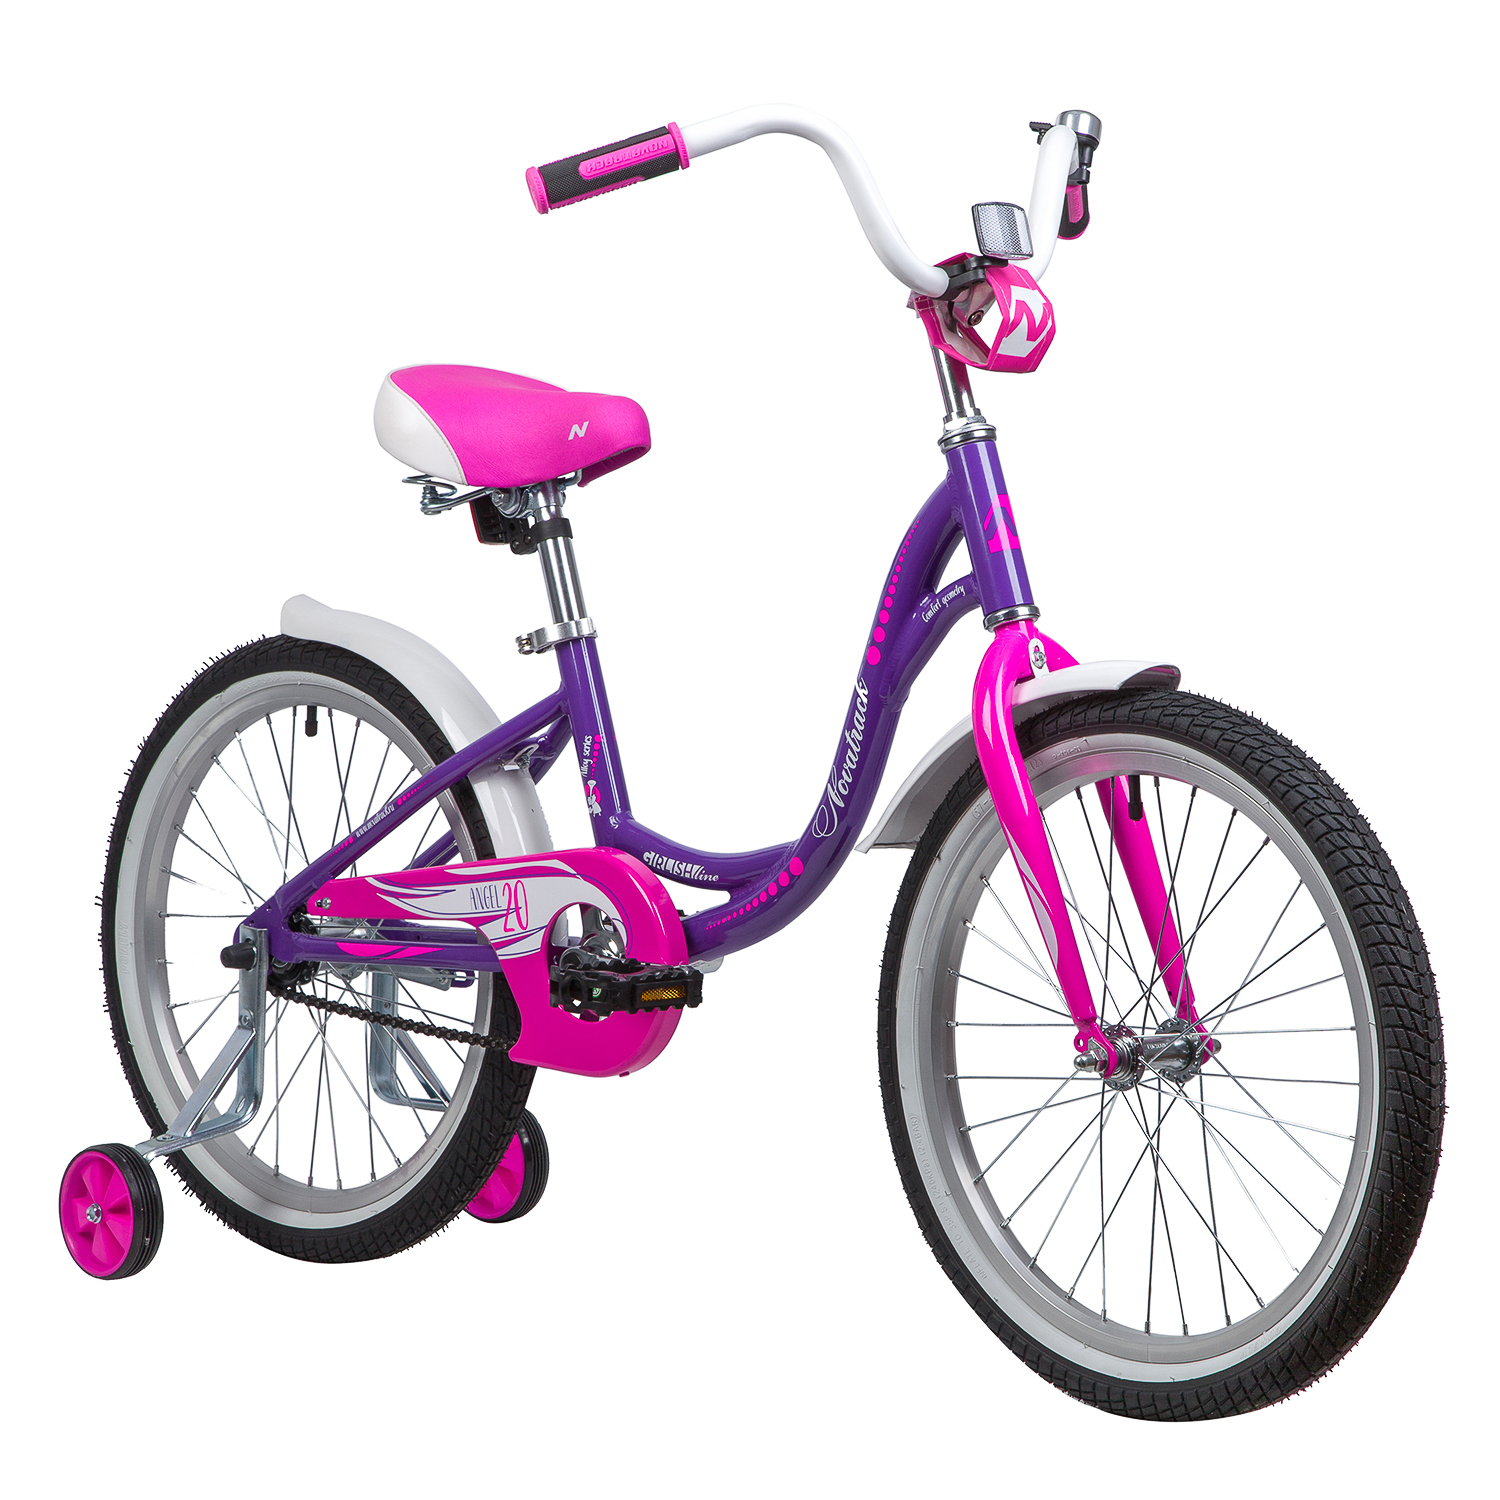 Детский велосипед от 5 лет для девочки. Велосипед Новатрек 20 дюймов для девочки. Novatrack Angel 20. Велосипед Новатрек подростковый. Велосипед Новатрек 20 розовый.